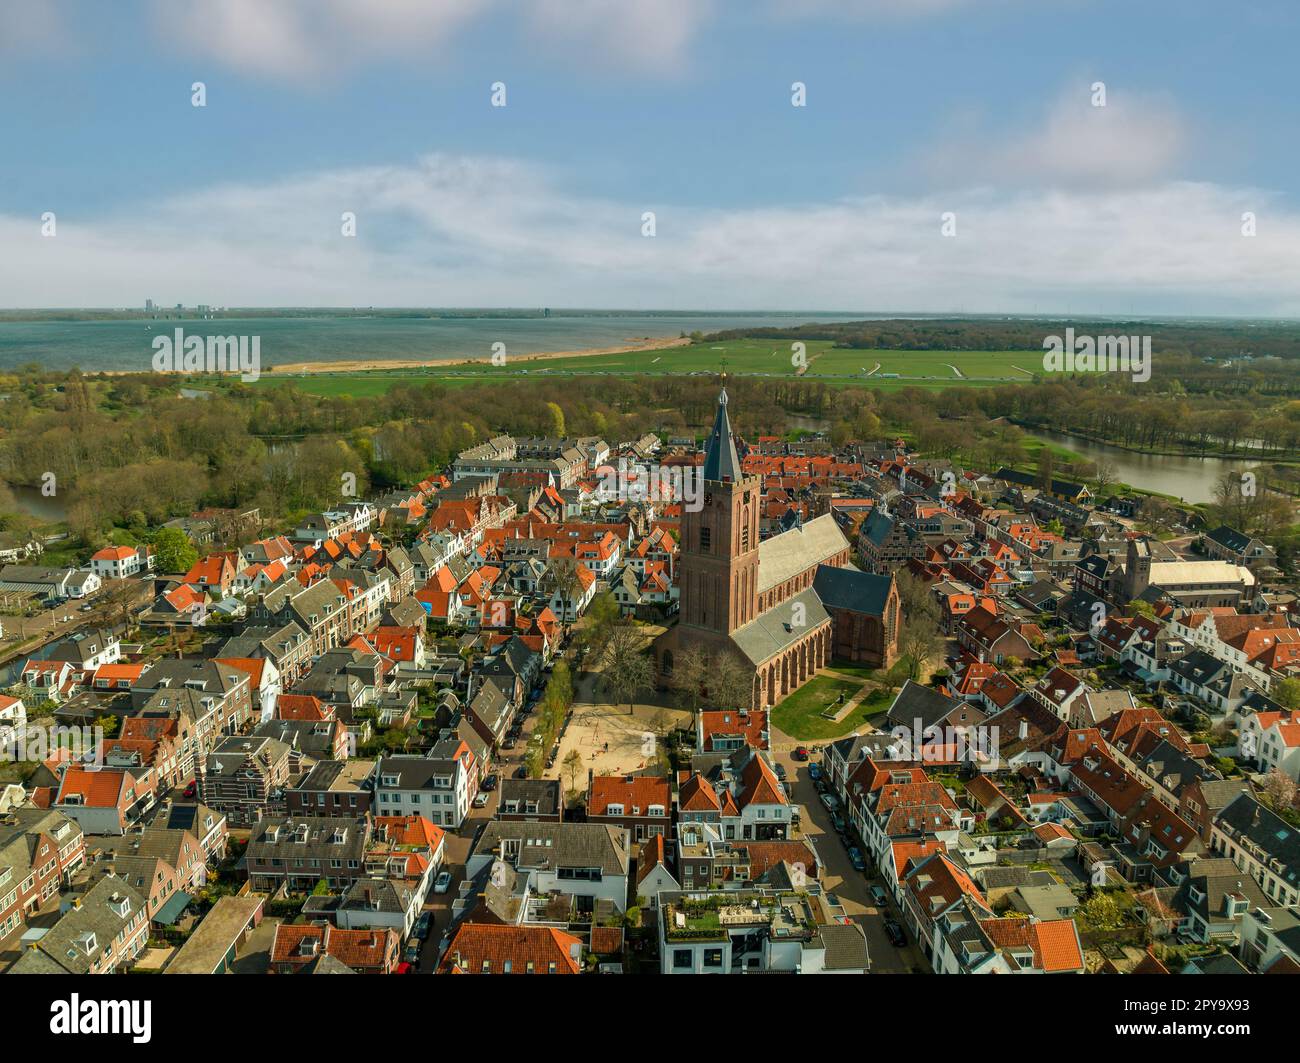 Naarden è un'affascinante città dei Paesi Bassi conosciuta per la sua fortezza a forma di stella ben conservata, il fossato e l'architettura storica. I visitatori possono godere di t Foto Stock